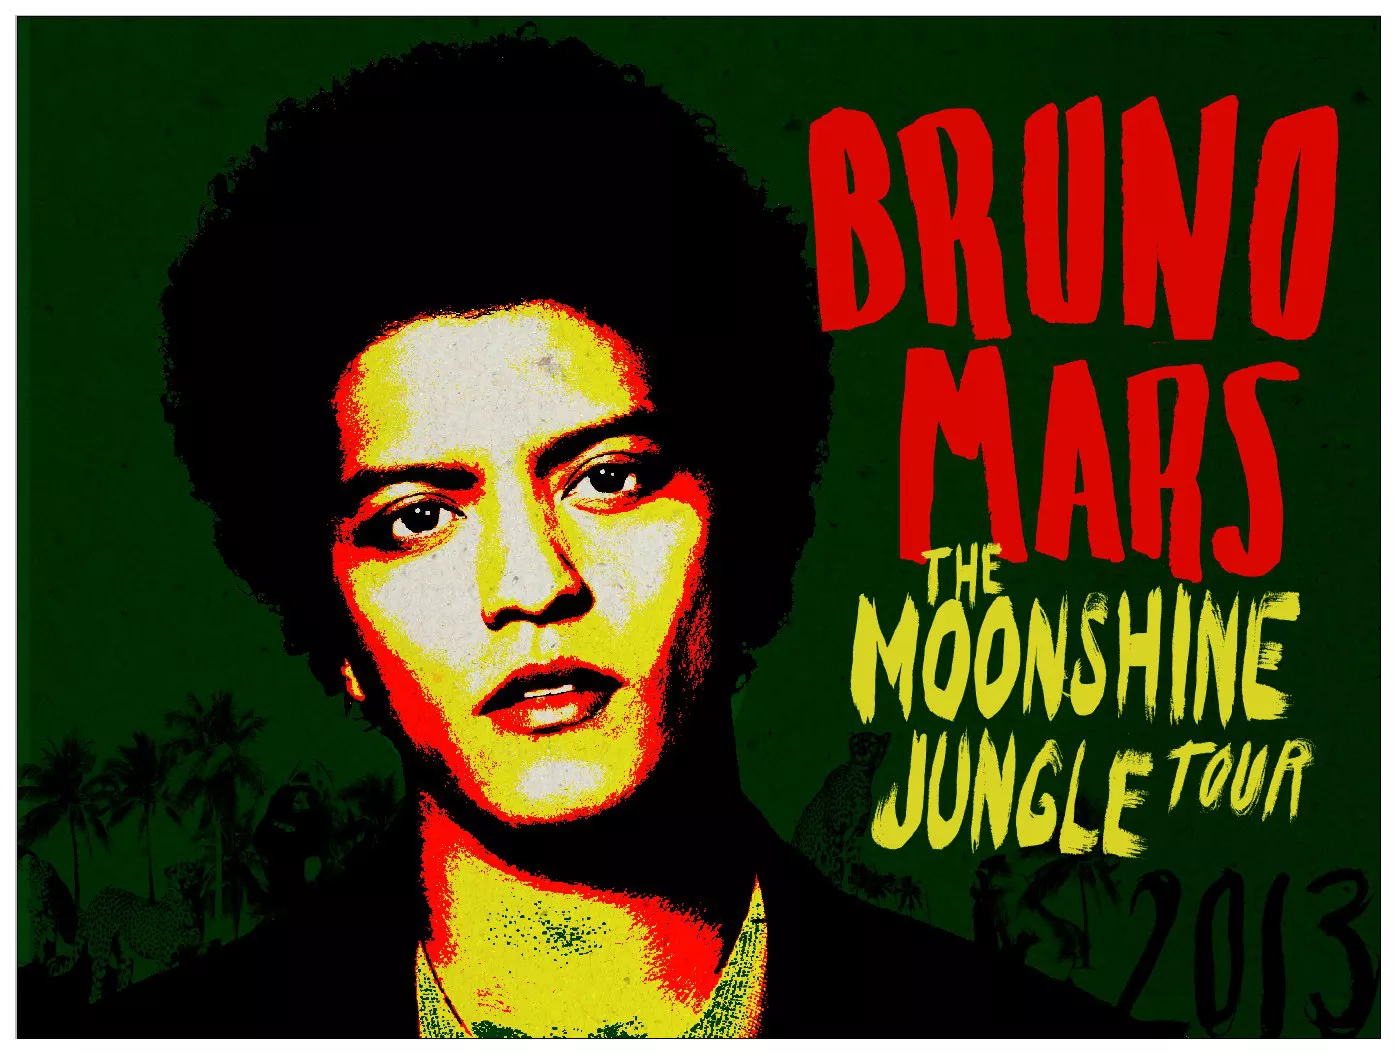 Bruno Mars en concierto en Barcelona